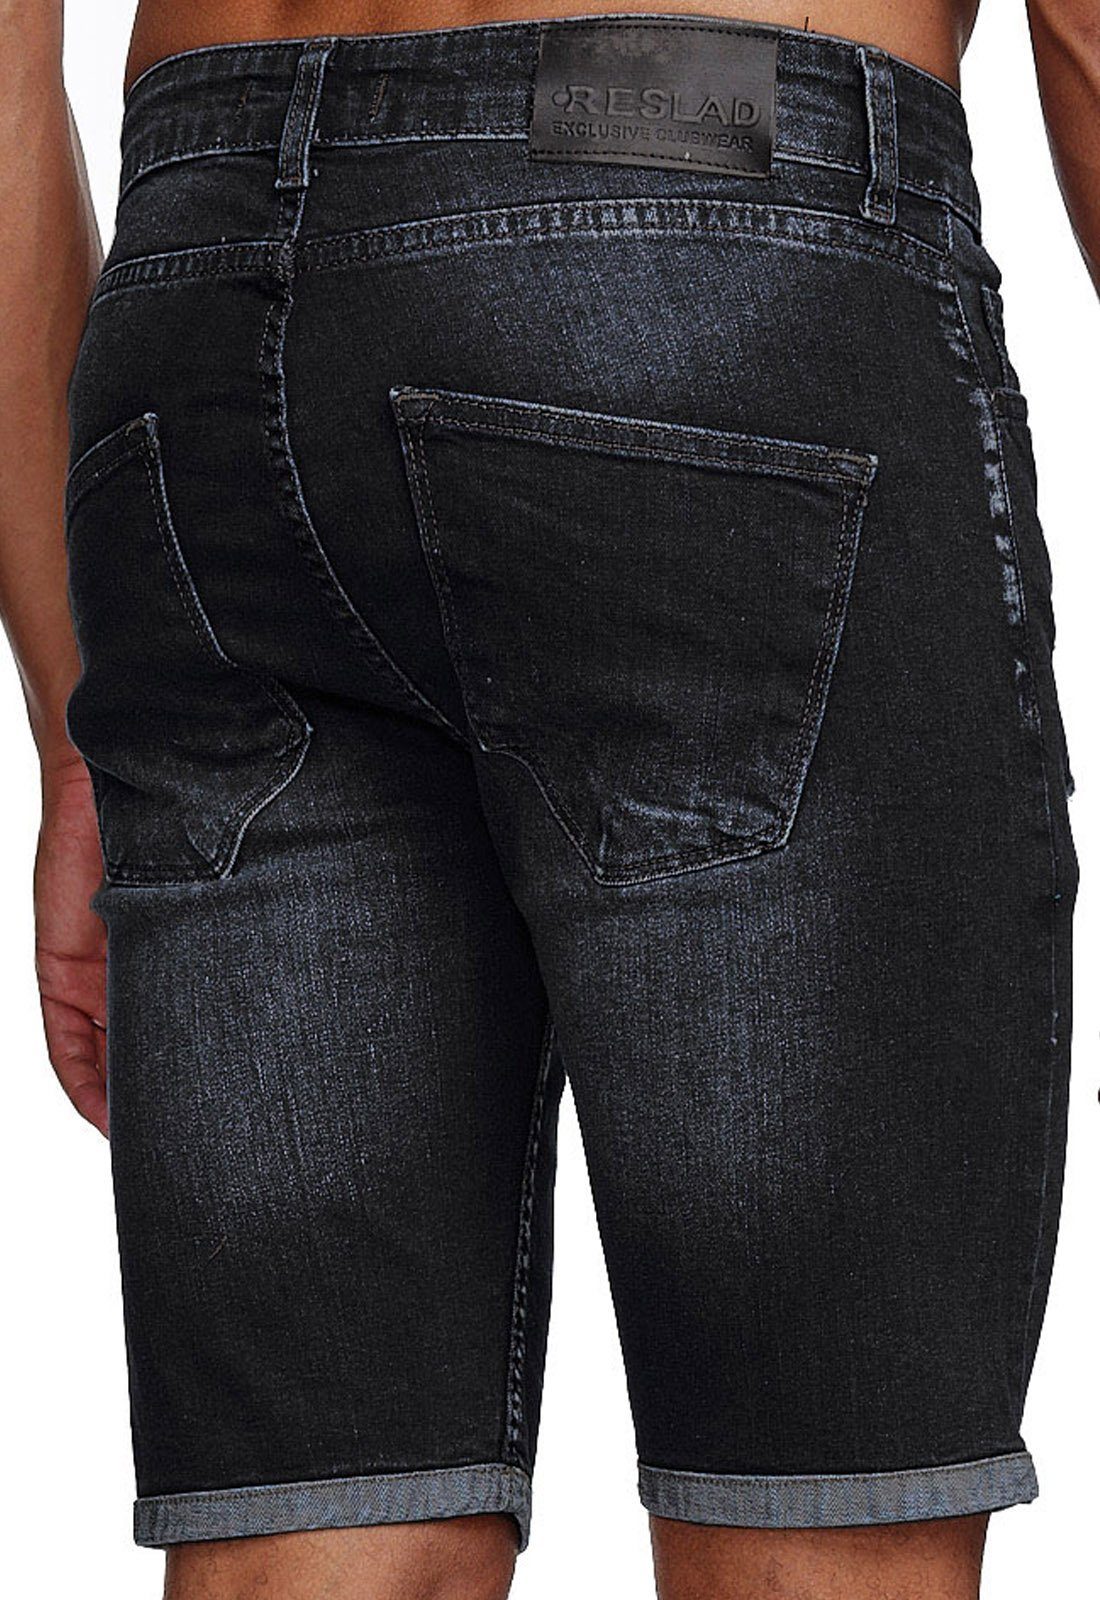 Reslad Jeansshorts Reslad Jeans Jeans-Hose Jeansbermudas Used Look Shorts Stretch Destroyed Destroyed Kurze Herren schwarz Hosen Sommer l